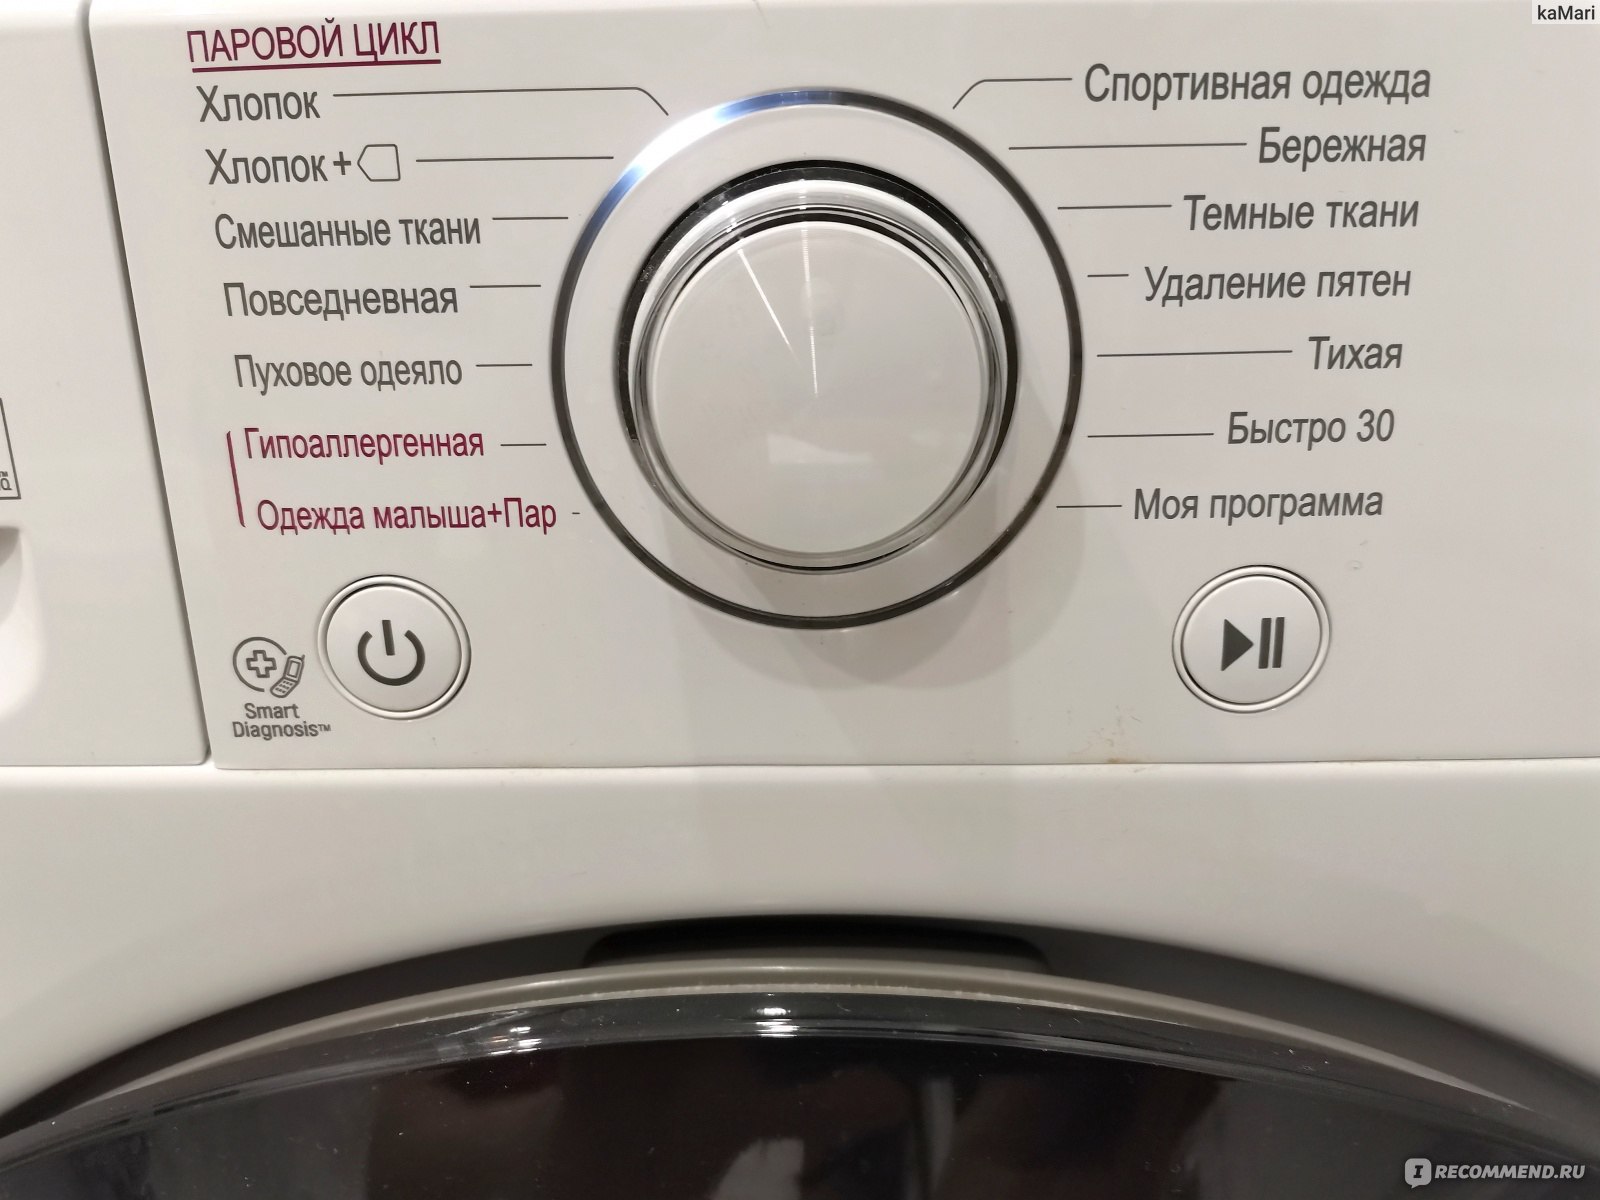 что такое функция пара steam в стиральной машине lg фото 84